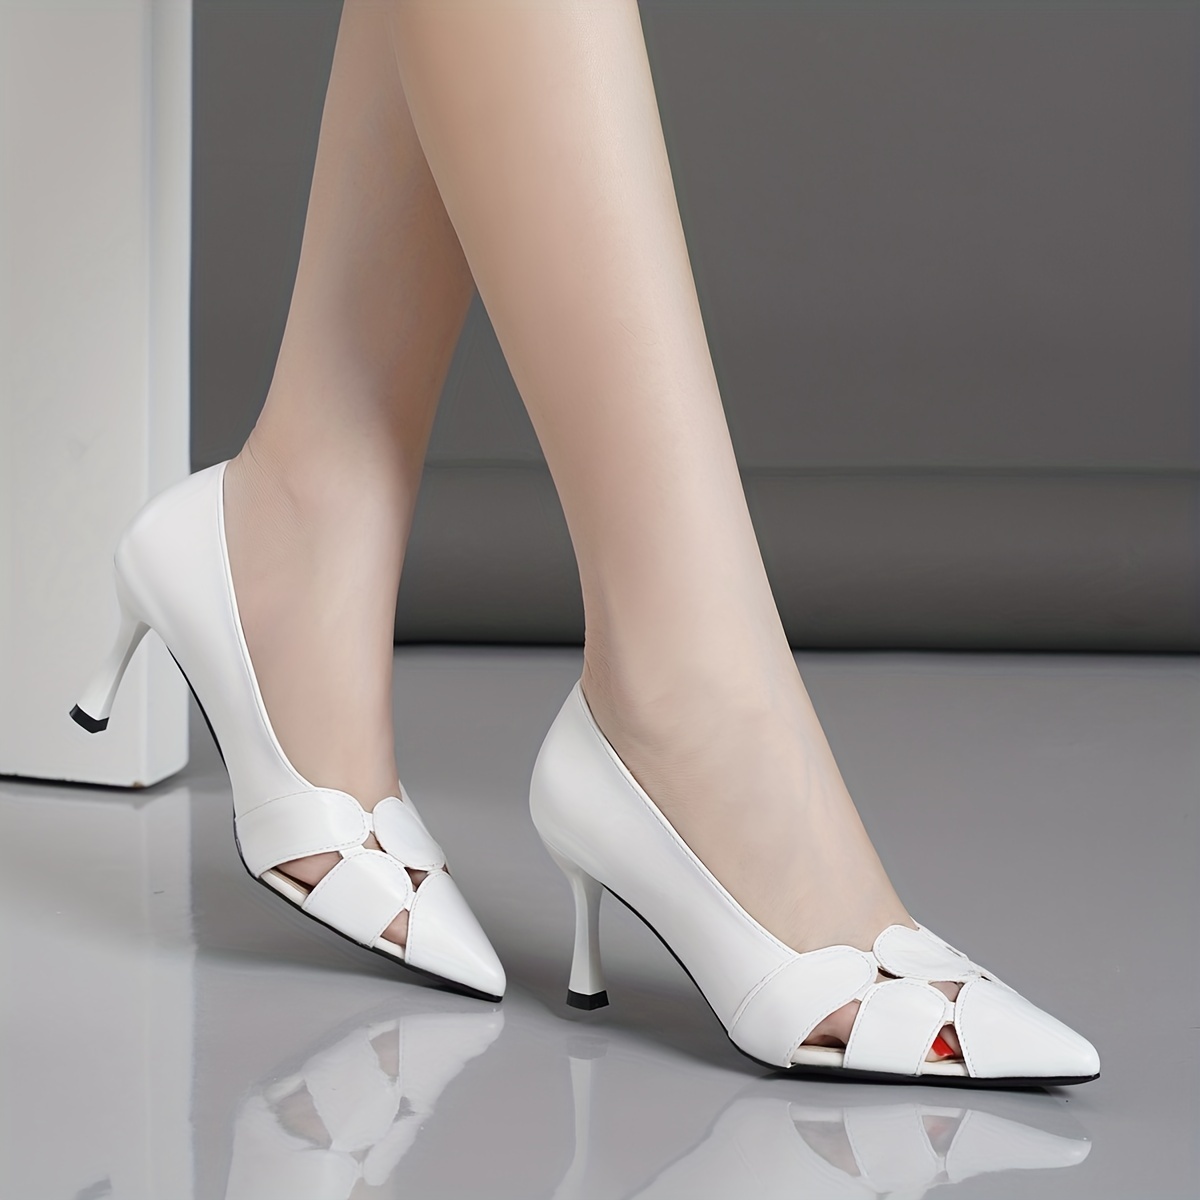 Women's Solid Color Stiletto Heels, Elegant Cutout Design Point